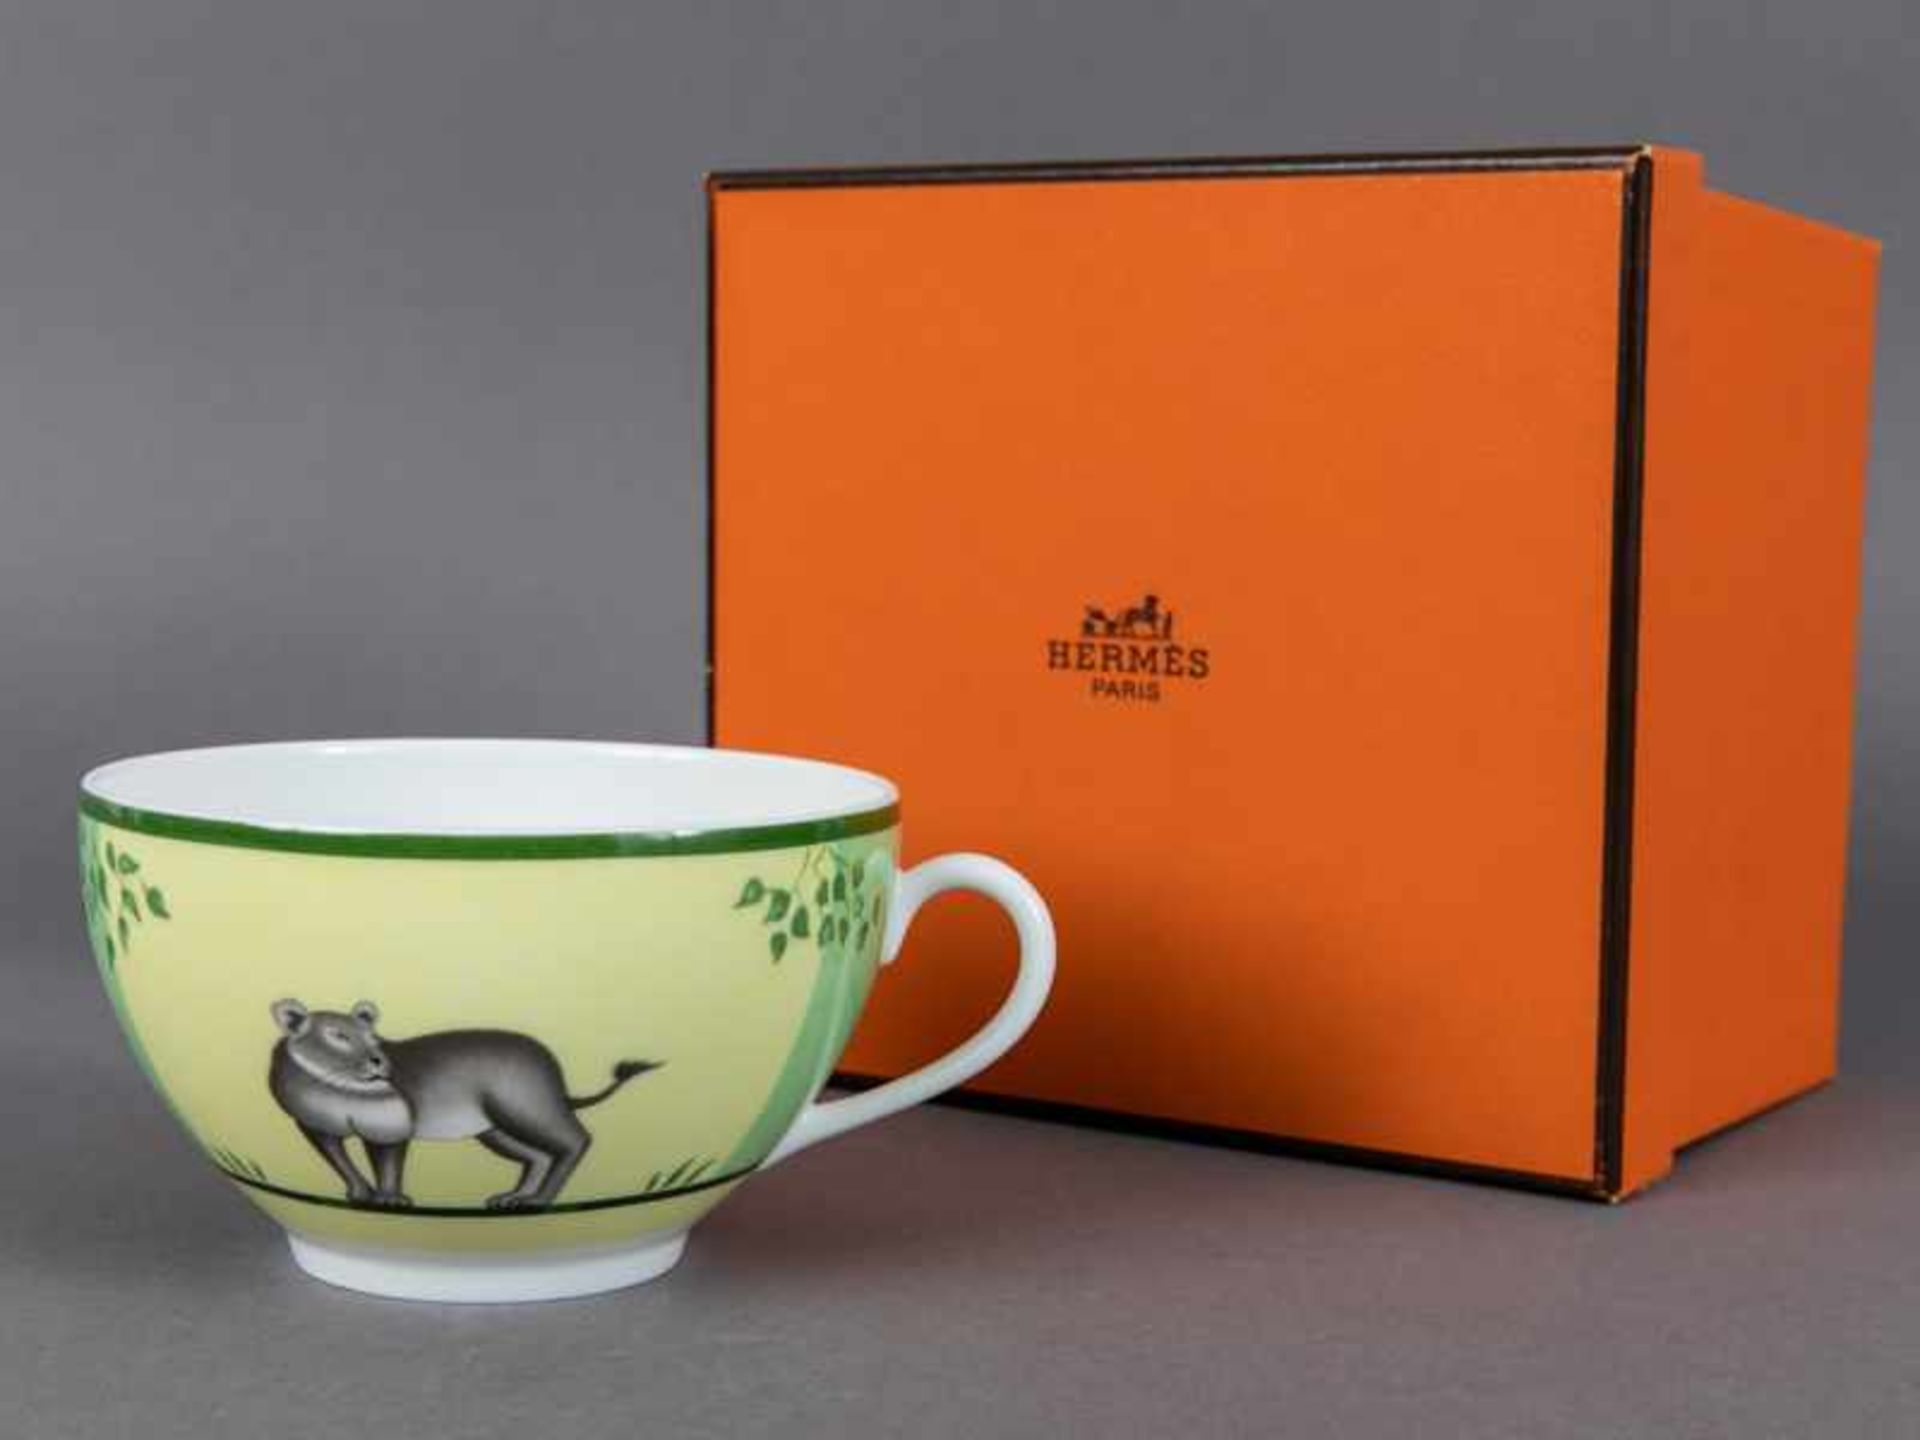 Große Kaffeetasse/Frühstückstasse "Africa", Hermès/Paris, 20. Jahrhundert. Große Kaffeetasse/